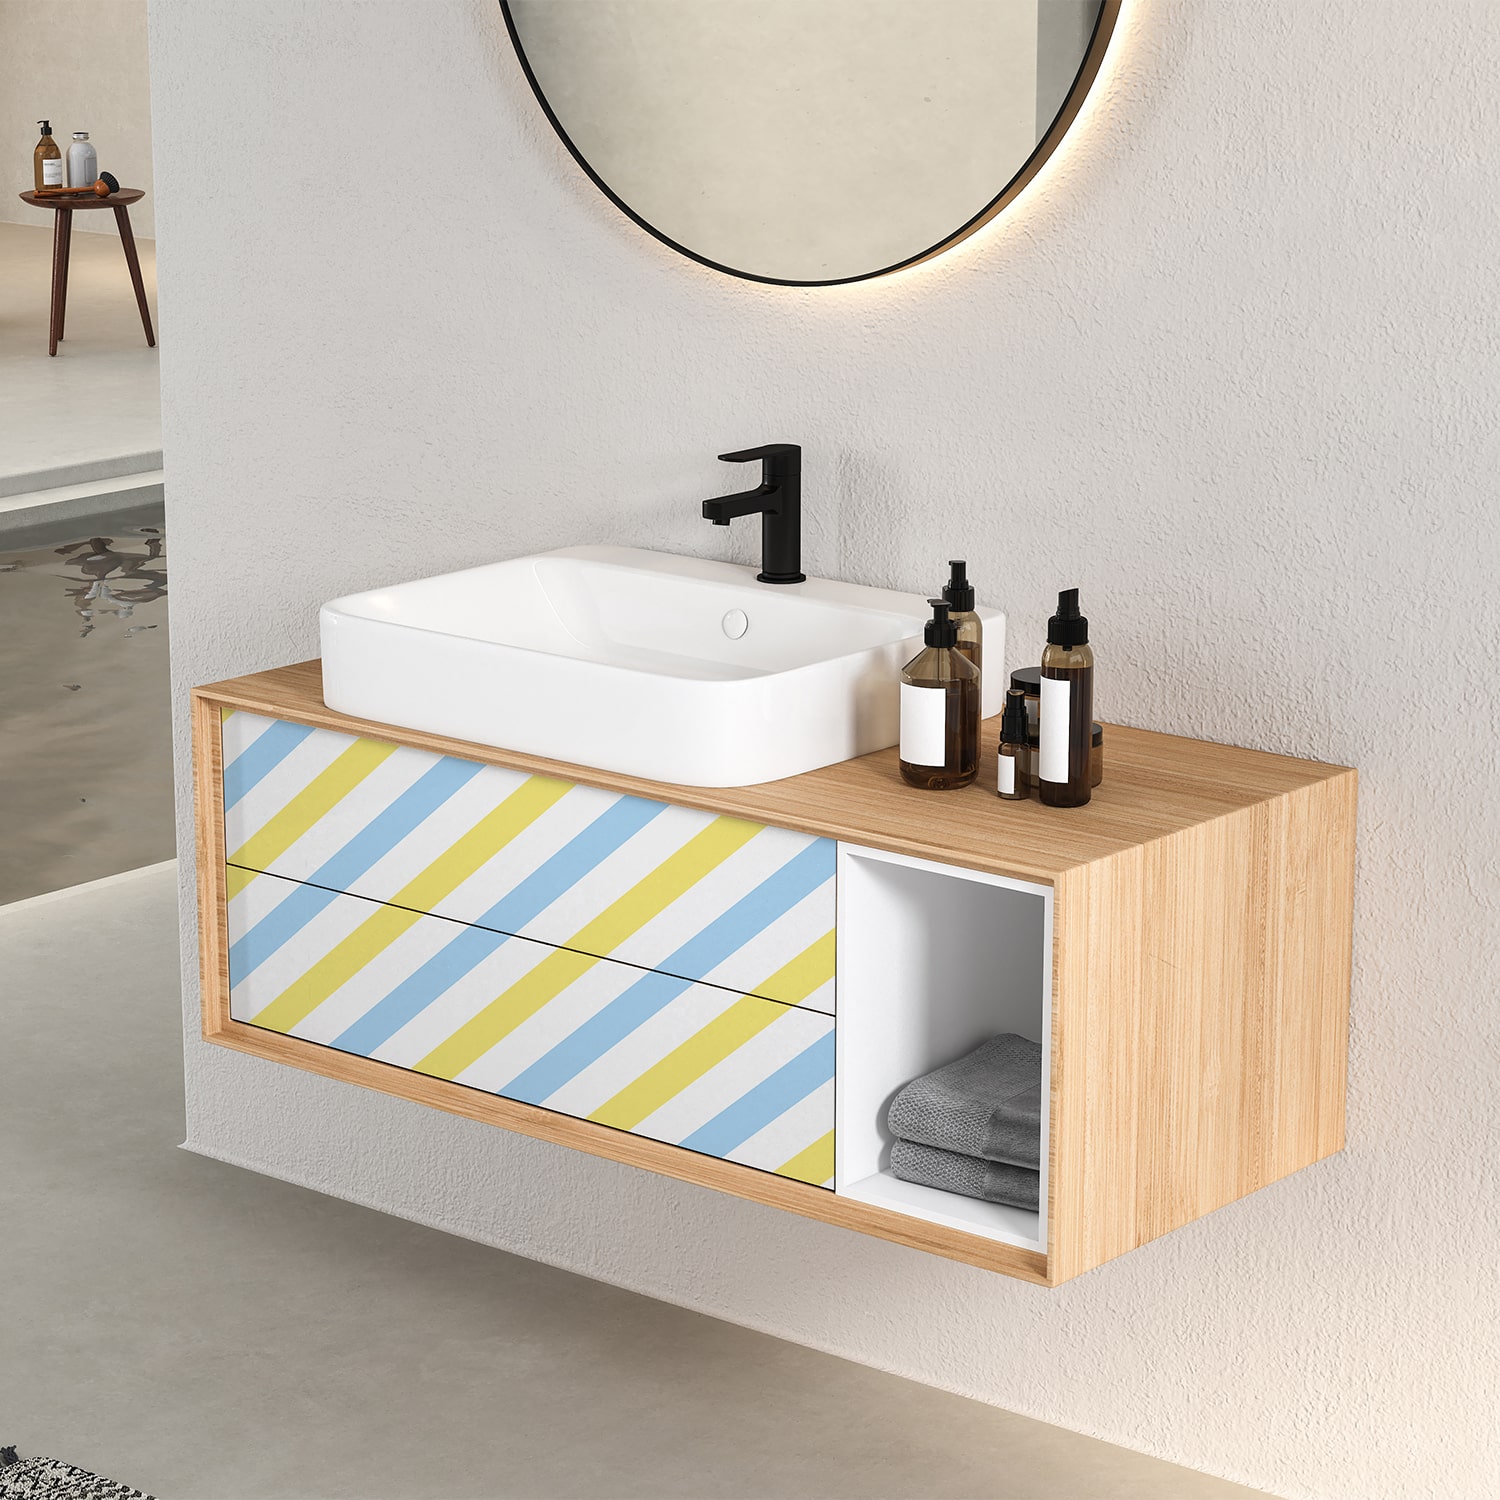 PP52-meuble-papier-peint-adhesif-decoratif-revetement-vinyle-rayures-diagonales-bleu-et-jaune-renovation-meuble-mur-min